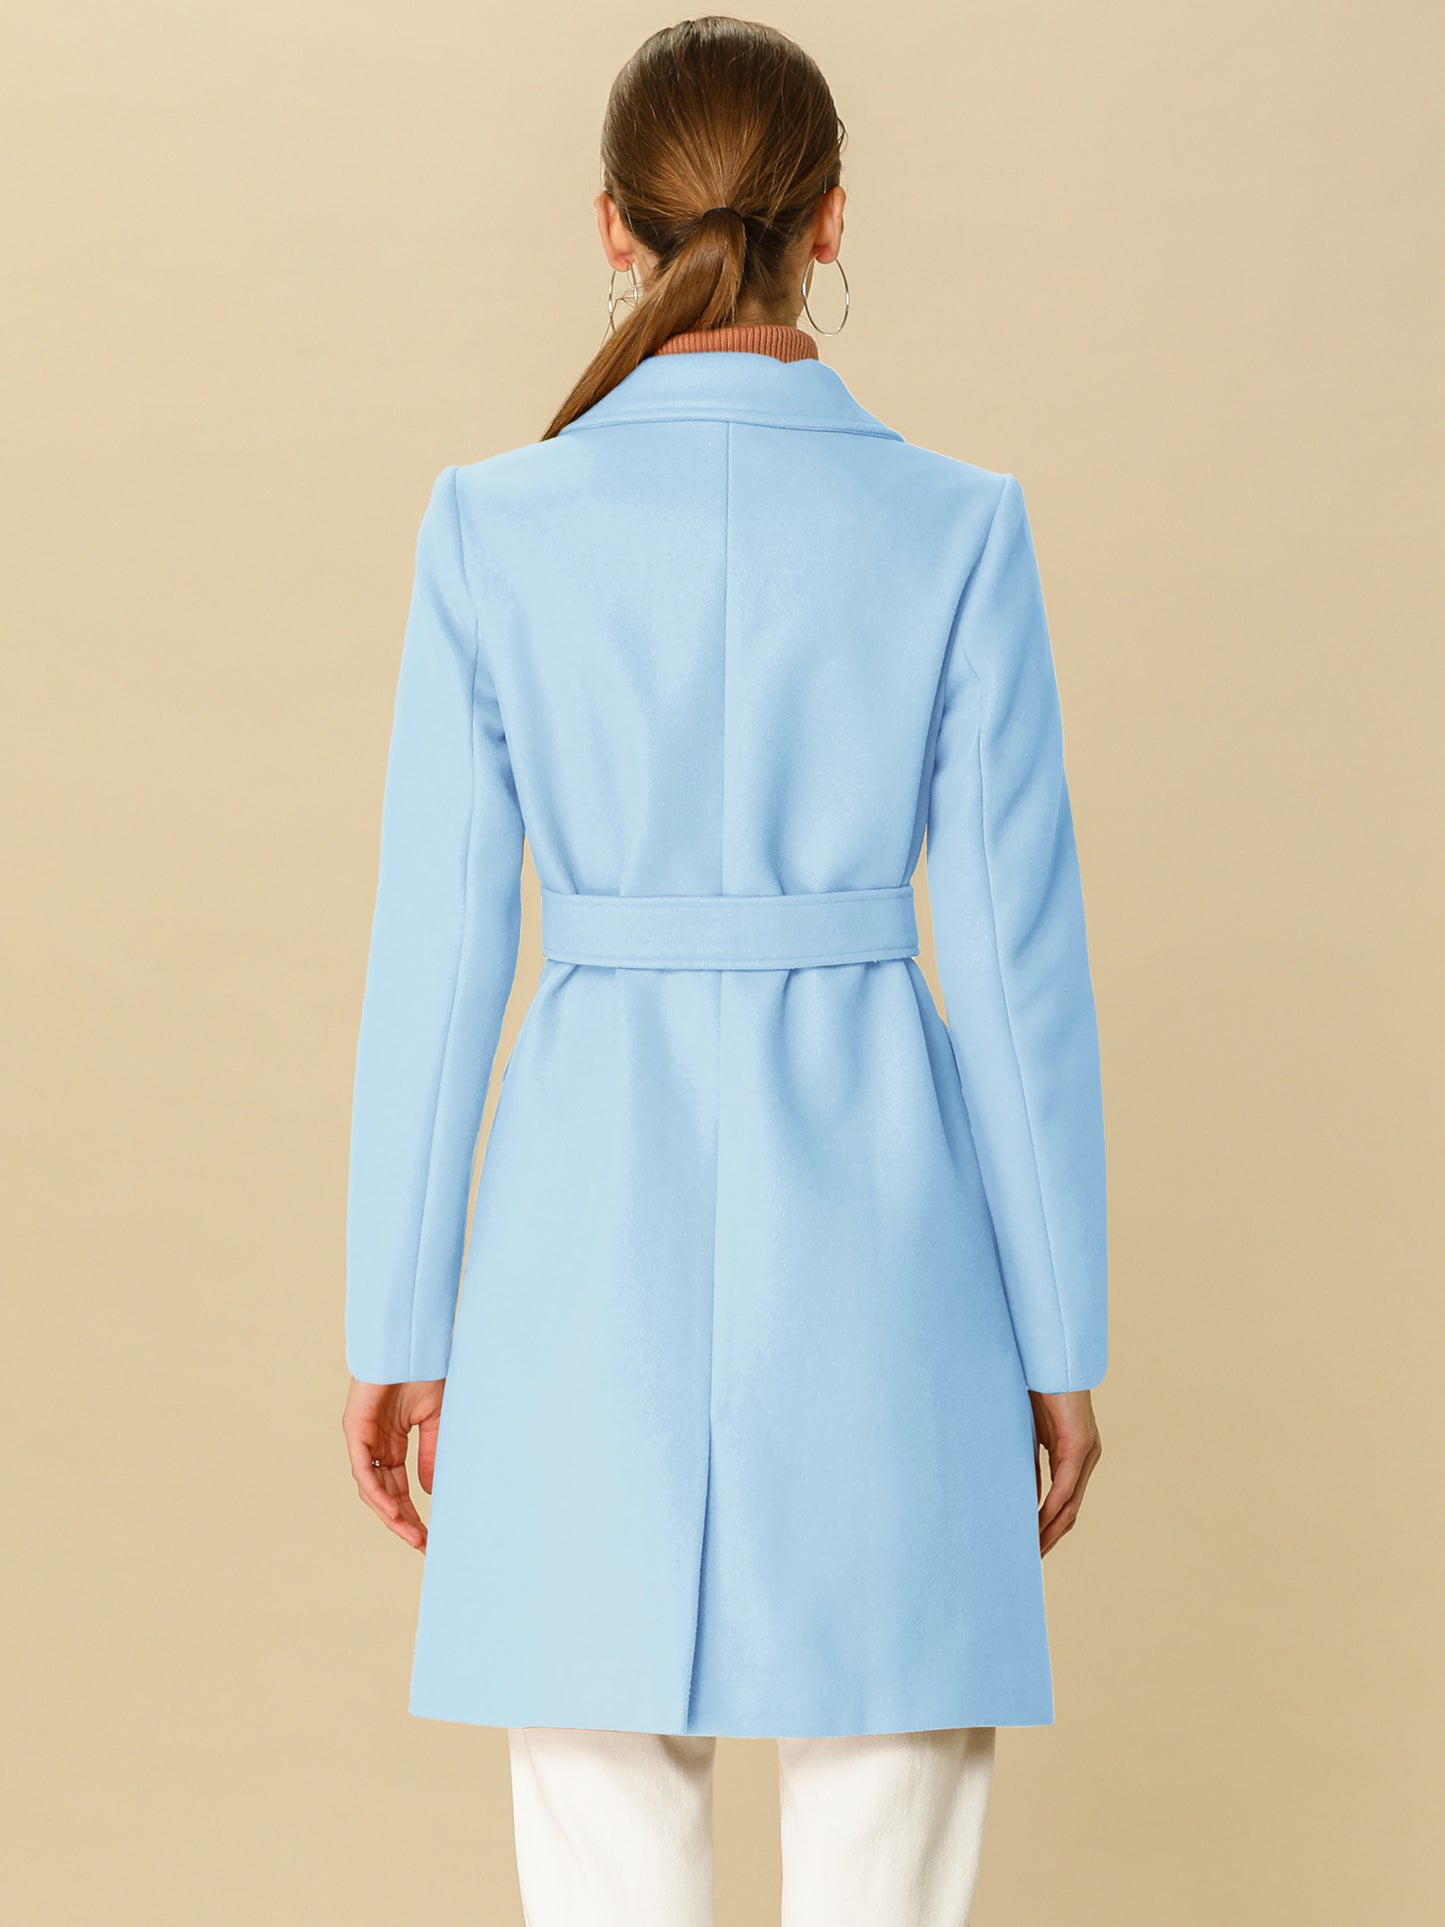 Allegra K Notch Lapel Double Breasted Belted Mid Long Outwear Winter Coat Light Blue